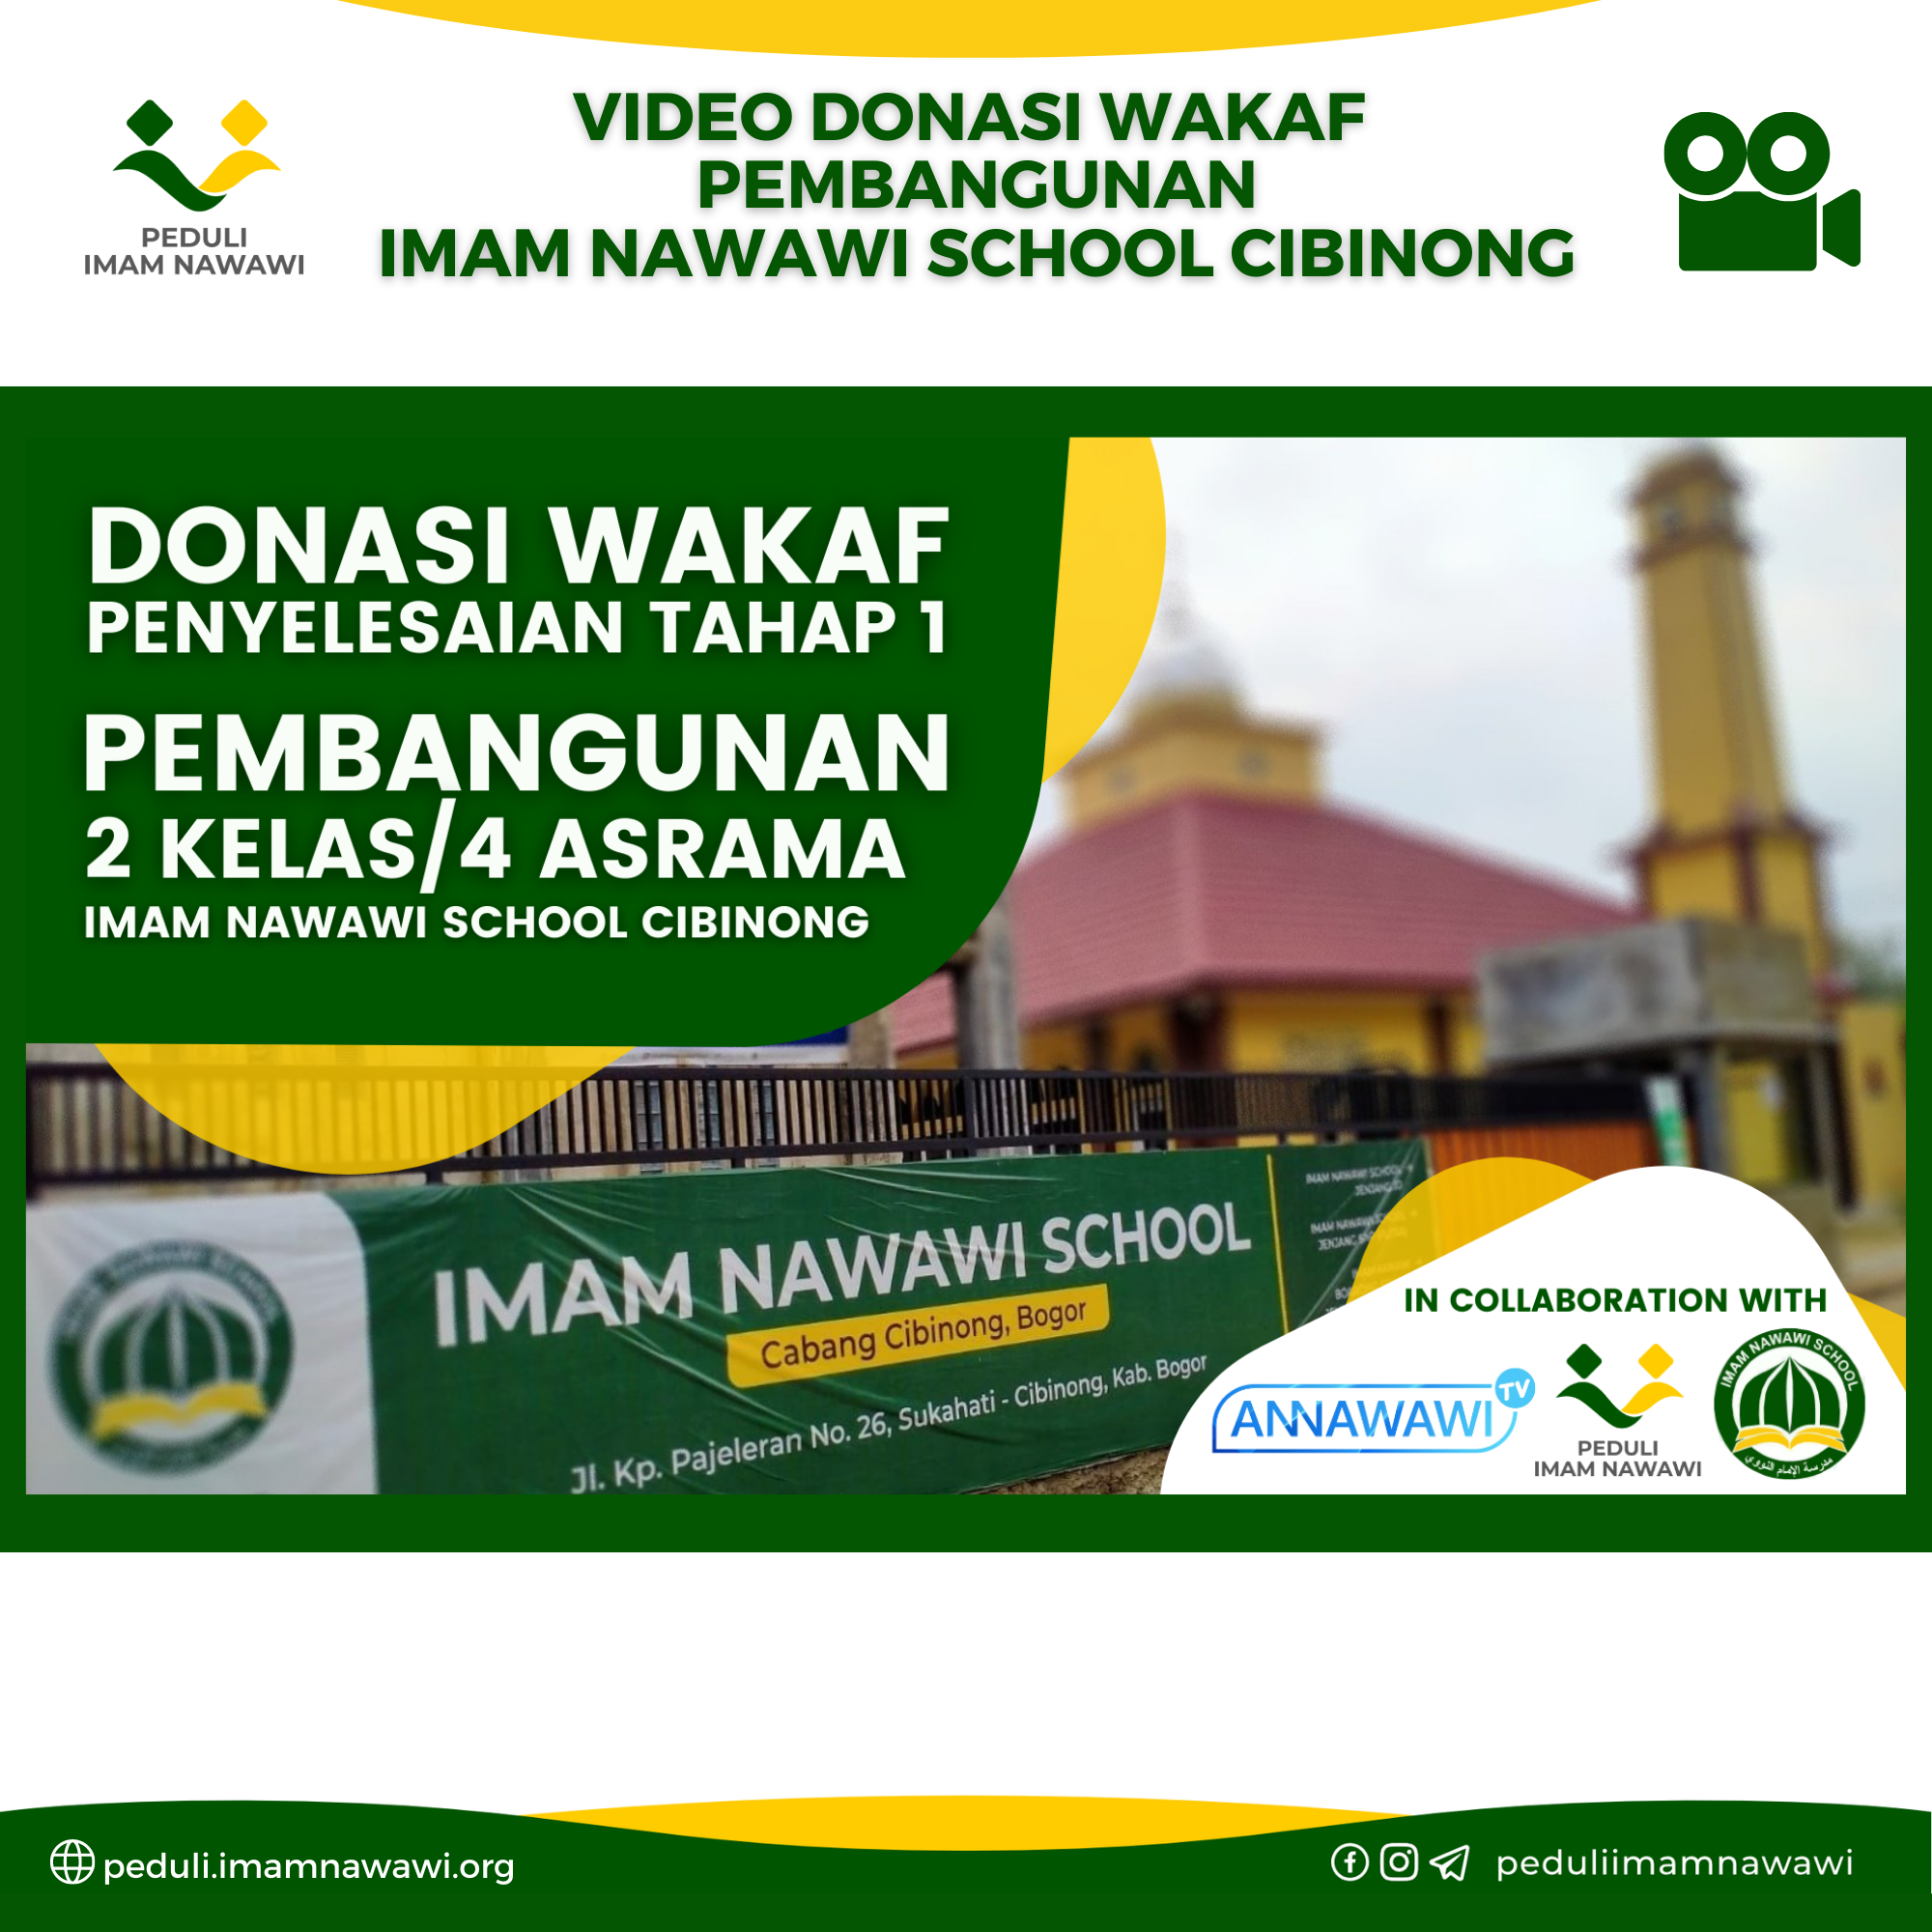 You are currently viewing VIDEO DONASI WAKAF PEMBANGUNAN IMAM NAWAWI SCHOOL CIBINONG